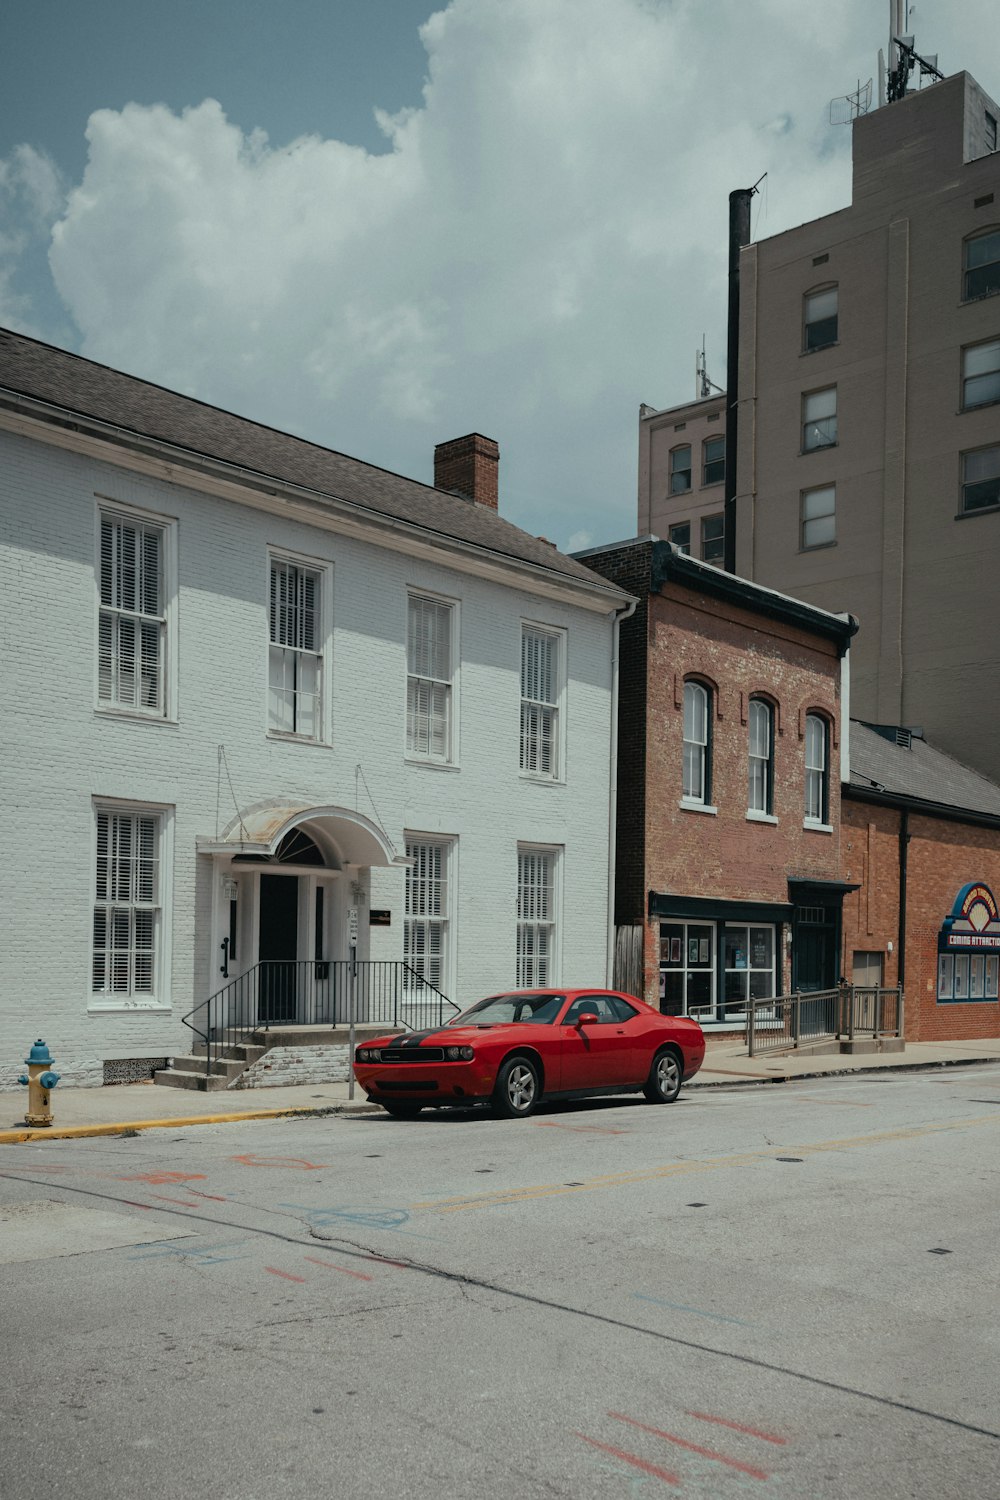 하얀 건물 앞에 주차된 빨간 차